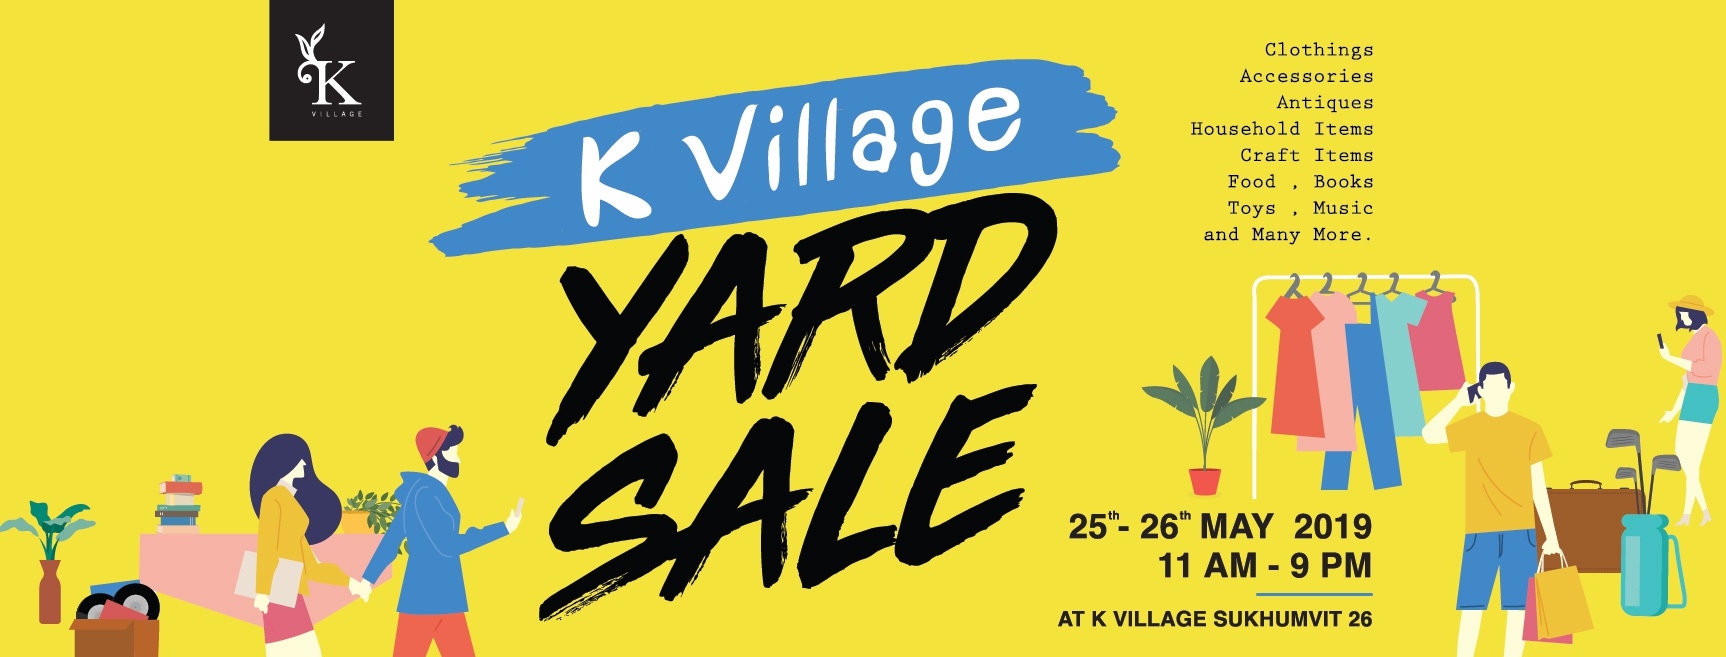 เปิดท้ายขายของมือสองสุดชิคกับ K Village Yard Sale 2019